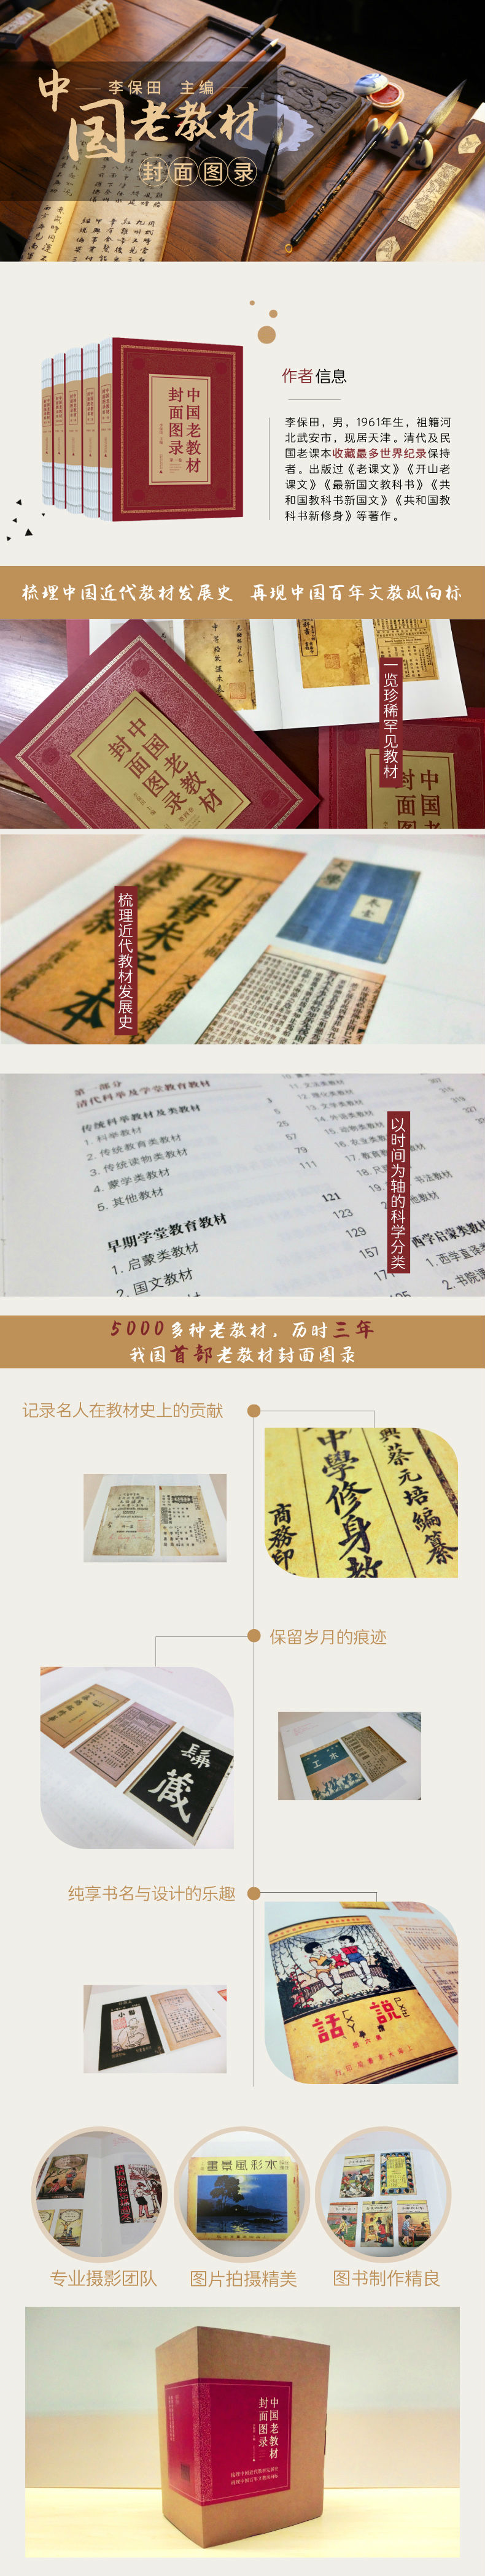 中国老教材封面图录 共5册 摘要书评试读 京东图书